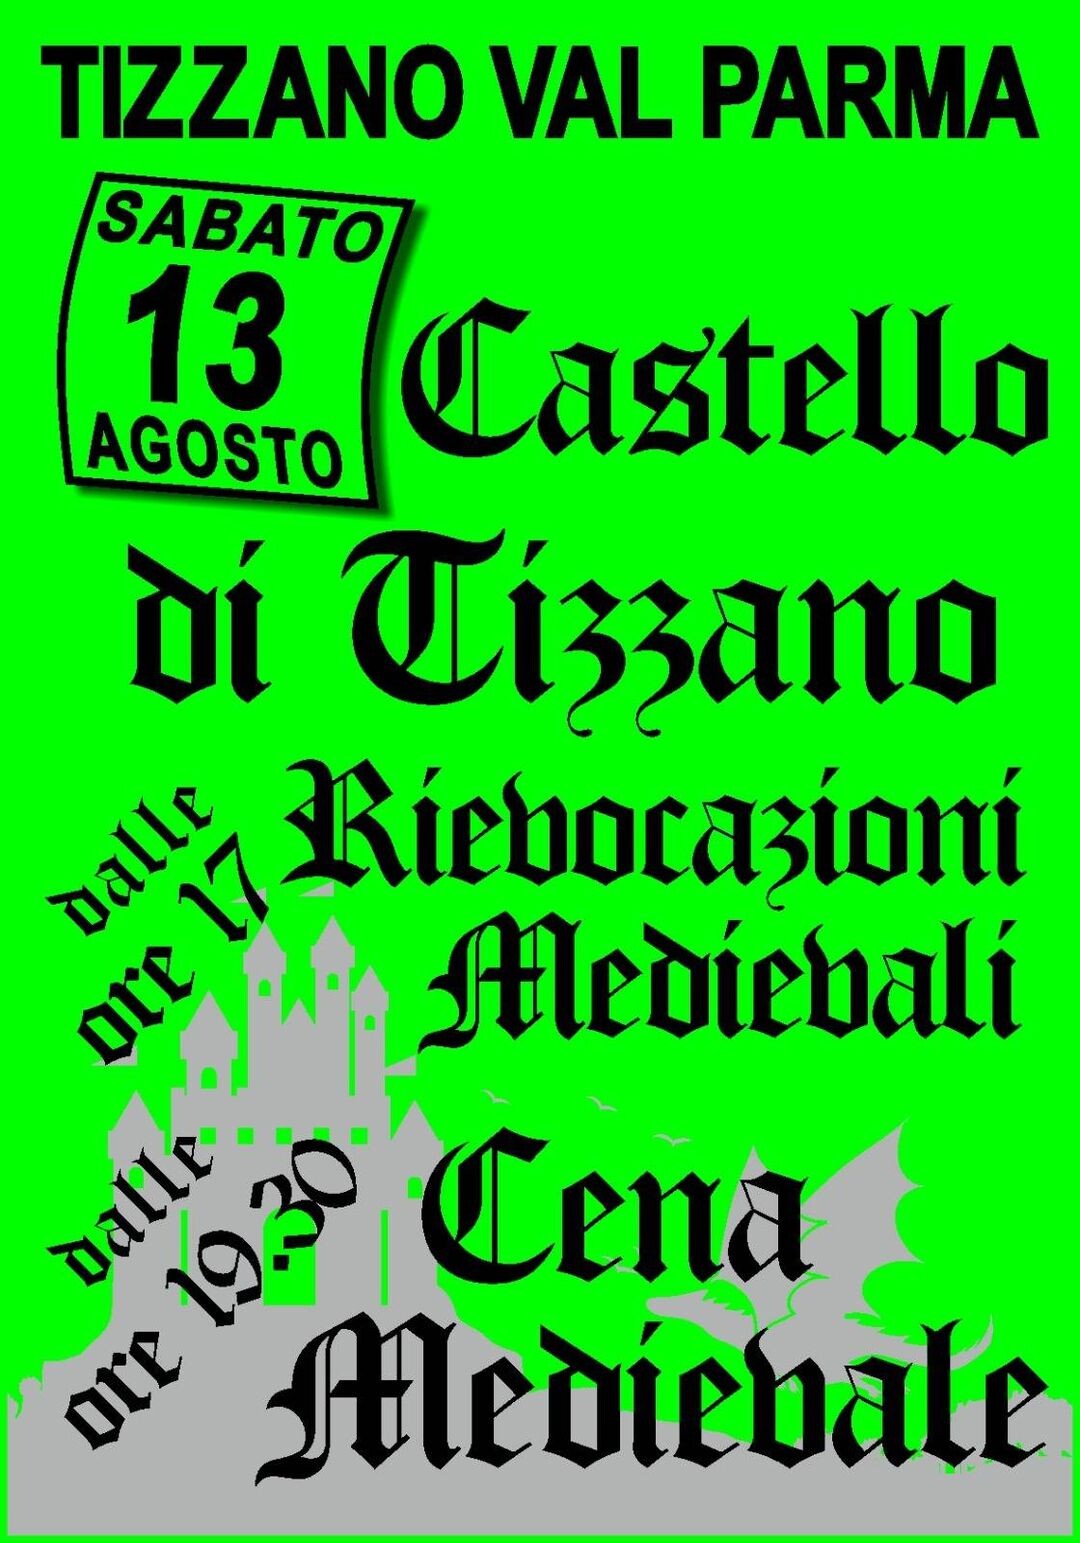 Rievocazioni medievali e cena al castello di Tizzano